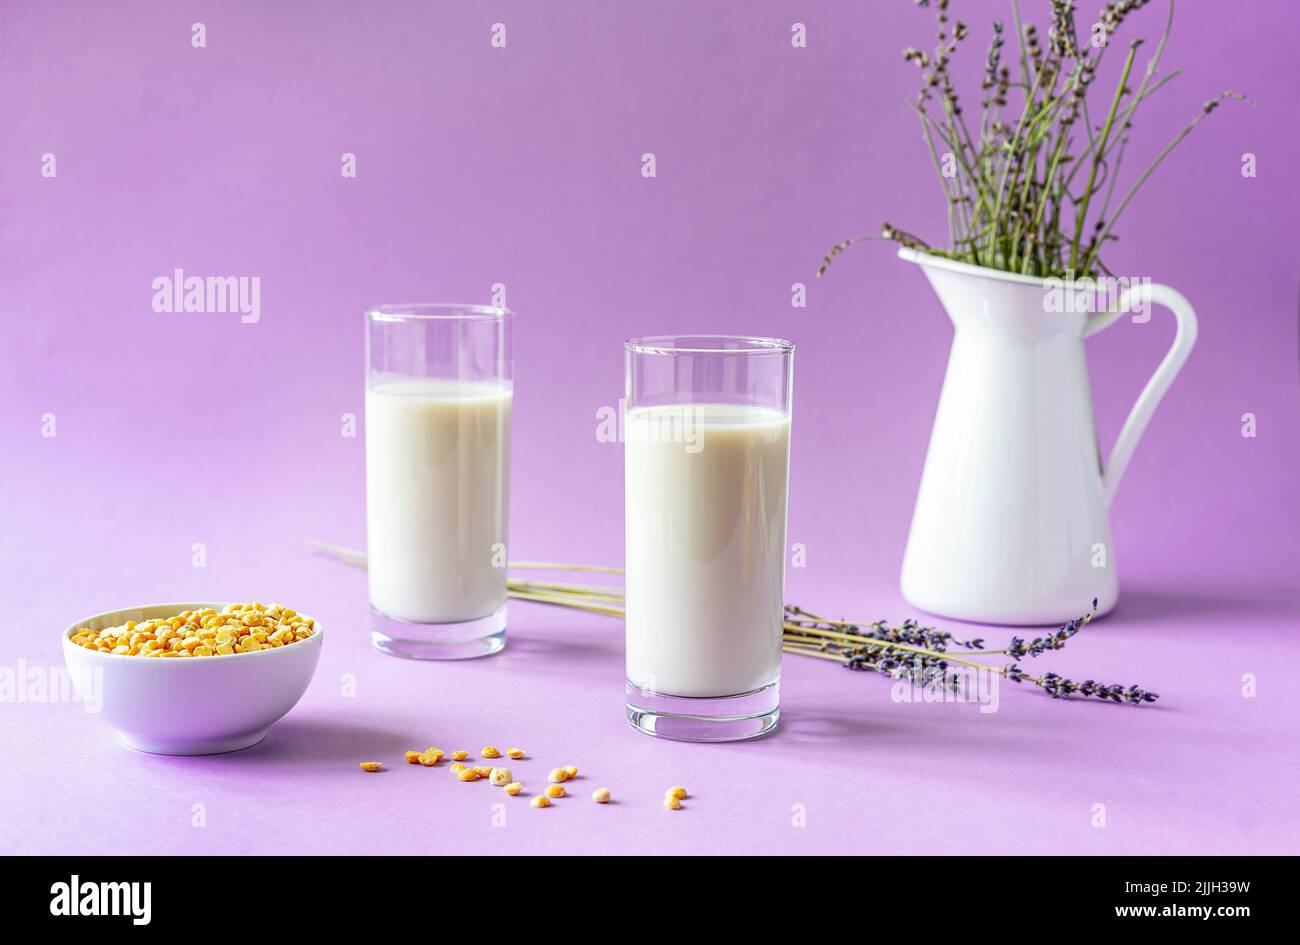 Vegane Erbsenmilch oder Lavendelmilch auf pflanzlicher Basis in Gläsern, Erbsensamen, weißer Krug mit Lavendel, gelbe Serviette. Lila Hintergrund. Speicherplatz kopieren Stockfoto